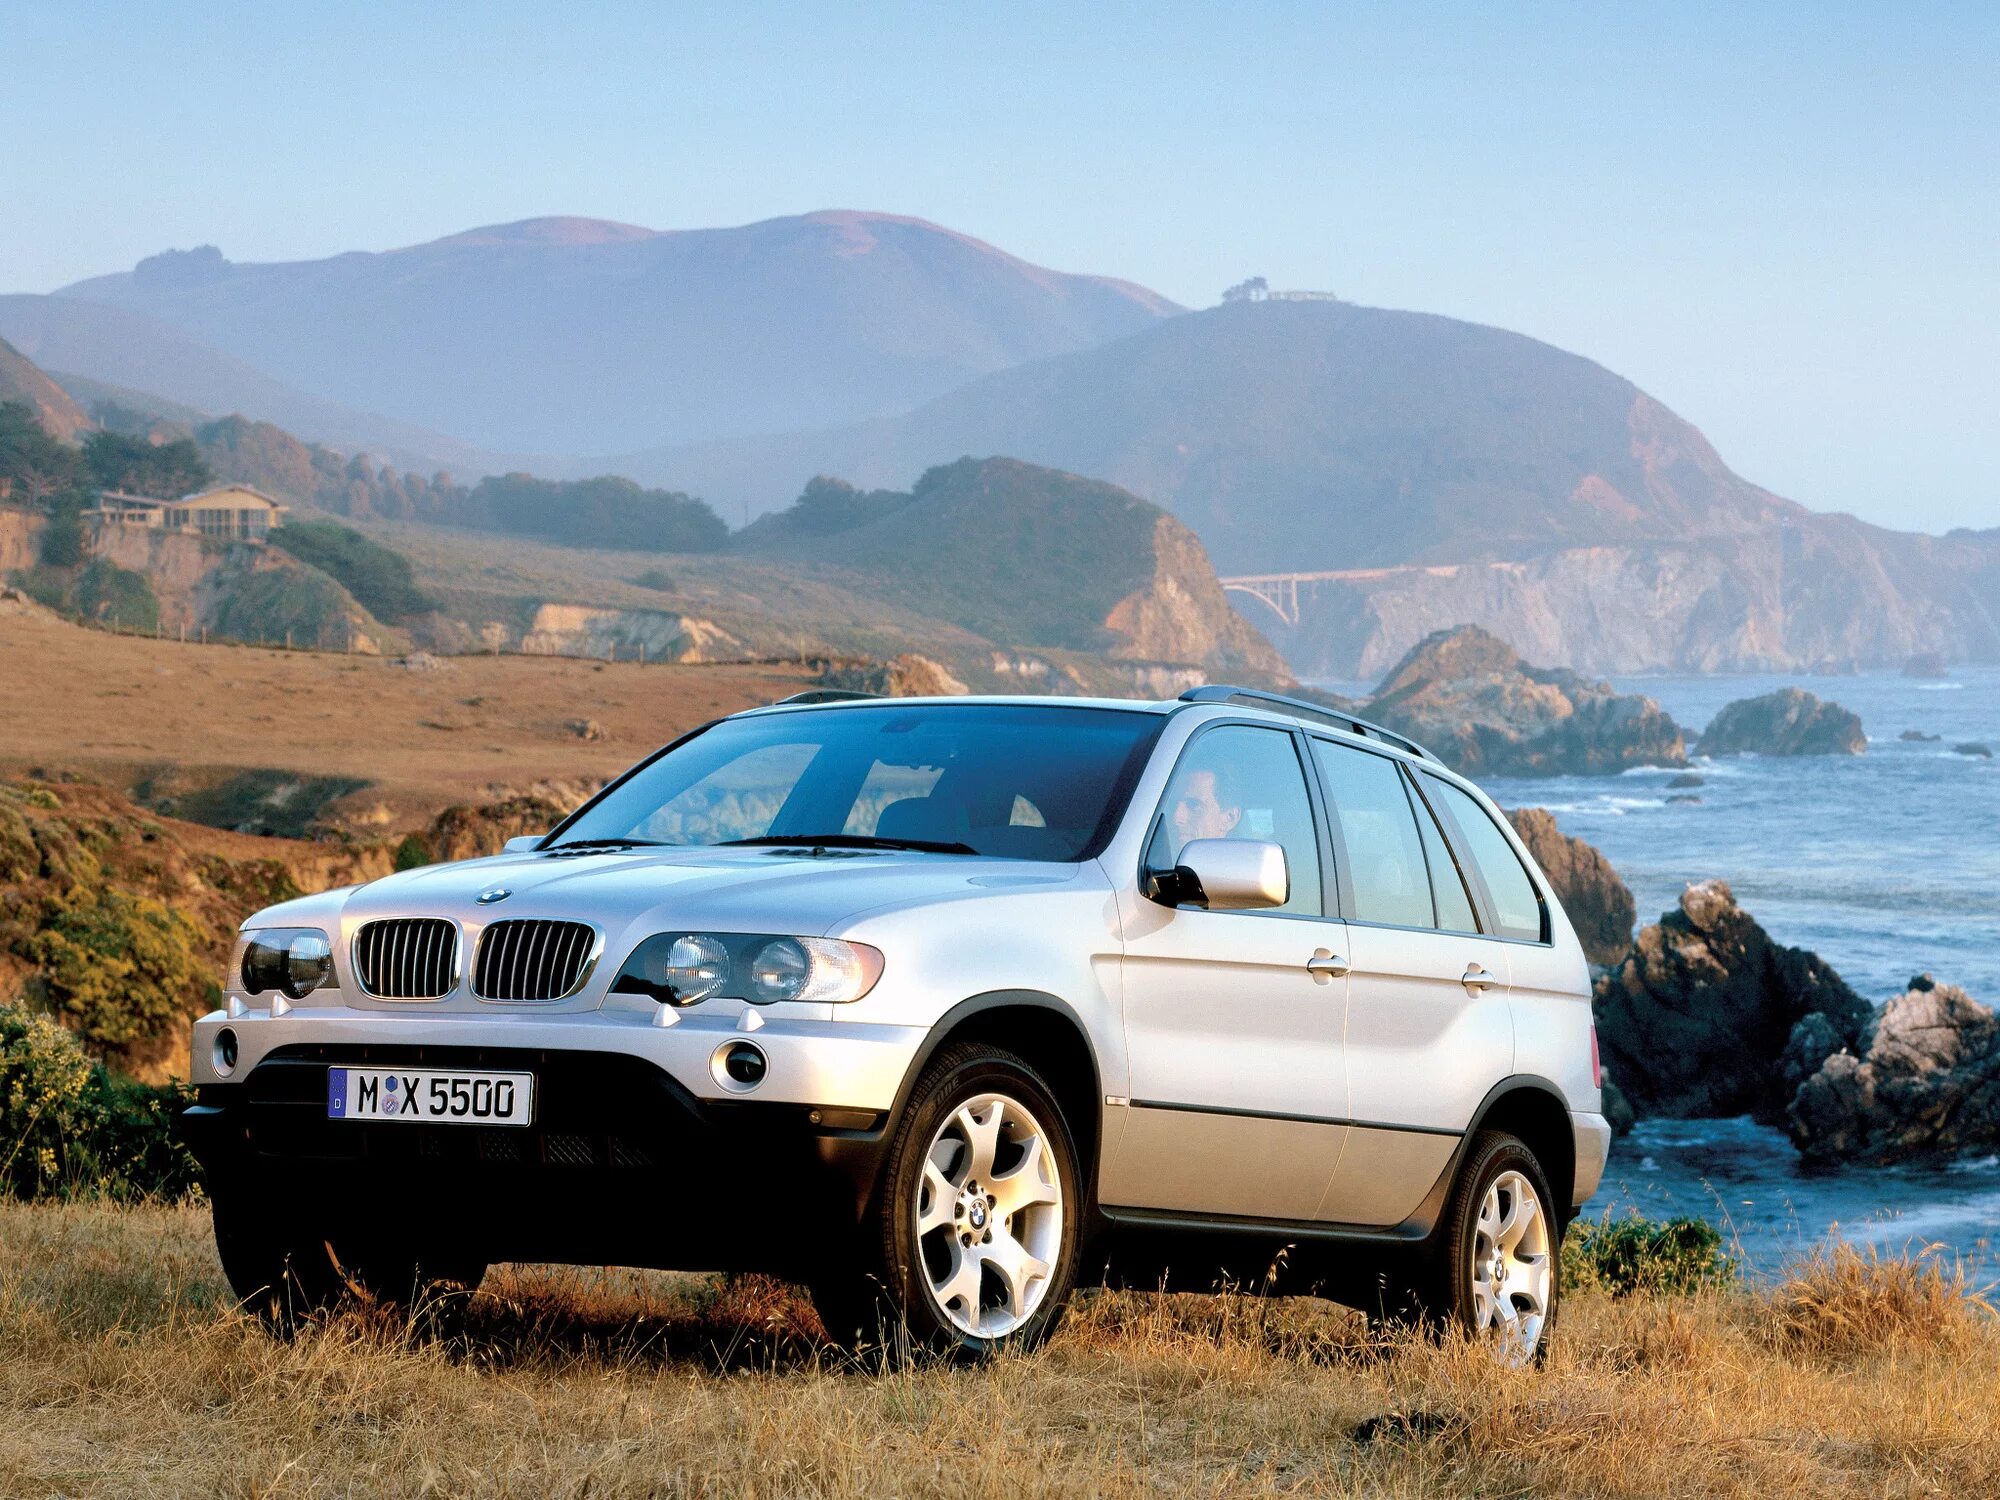 Bmw x5 2003. BMW x5 e53. БМВ х5 1999-2003. BMW x5 e53 2000. BMW x5 e53 1999.